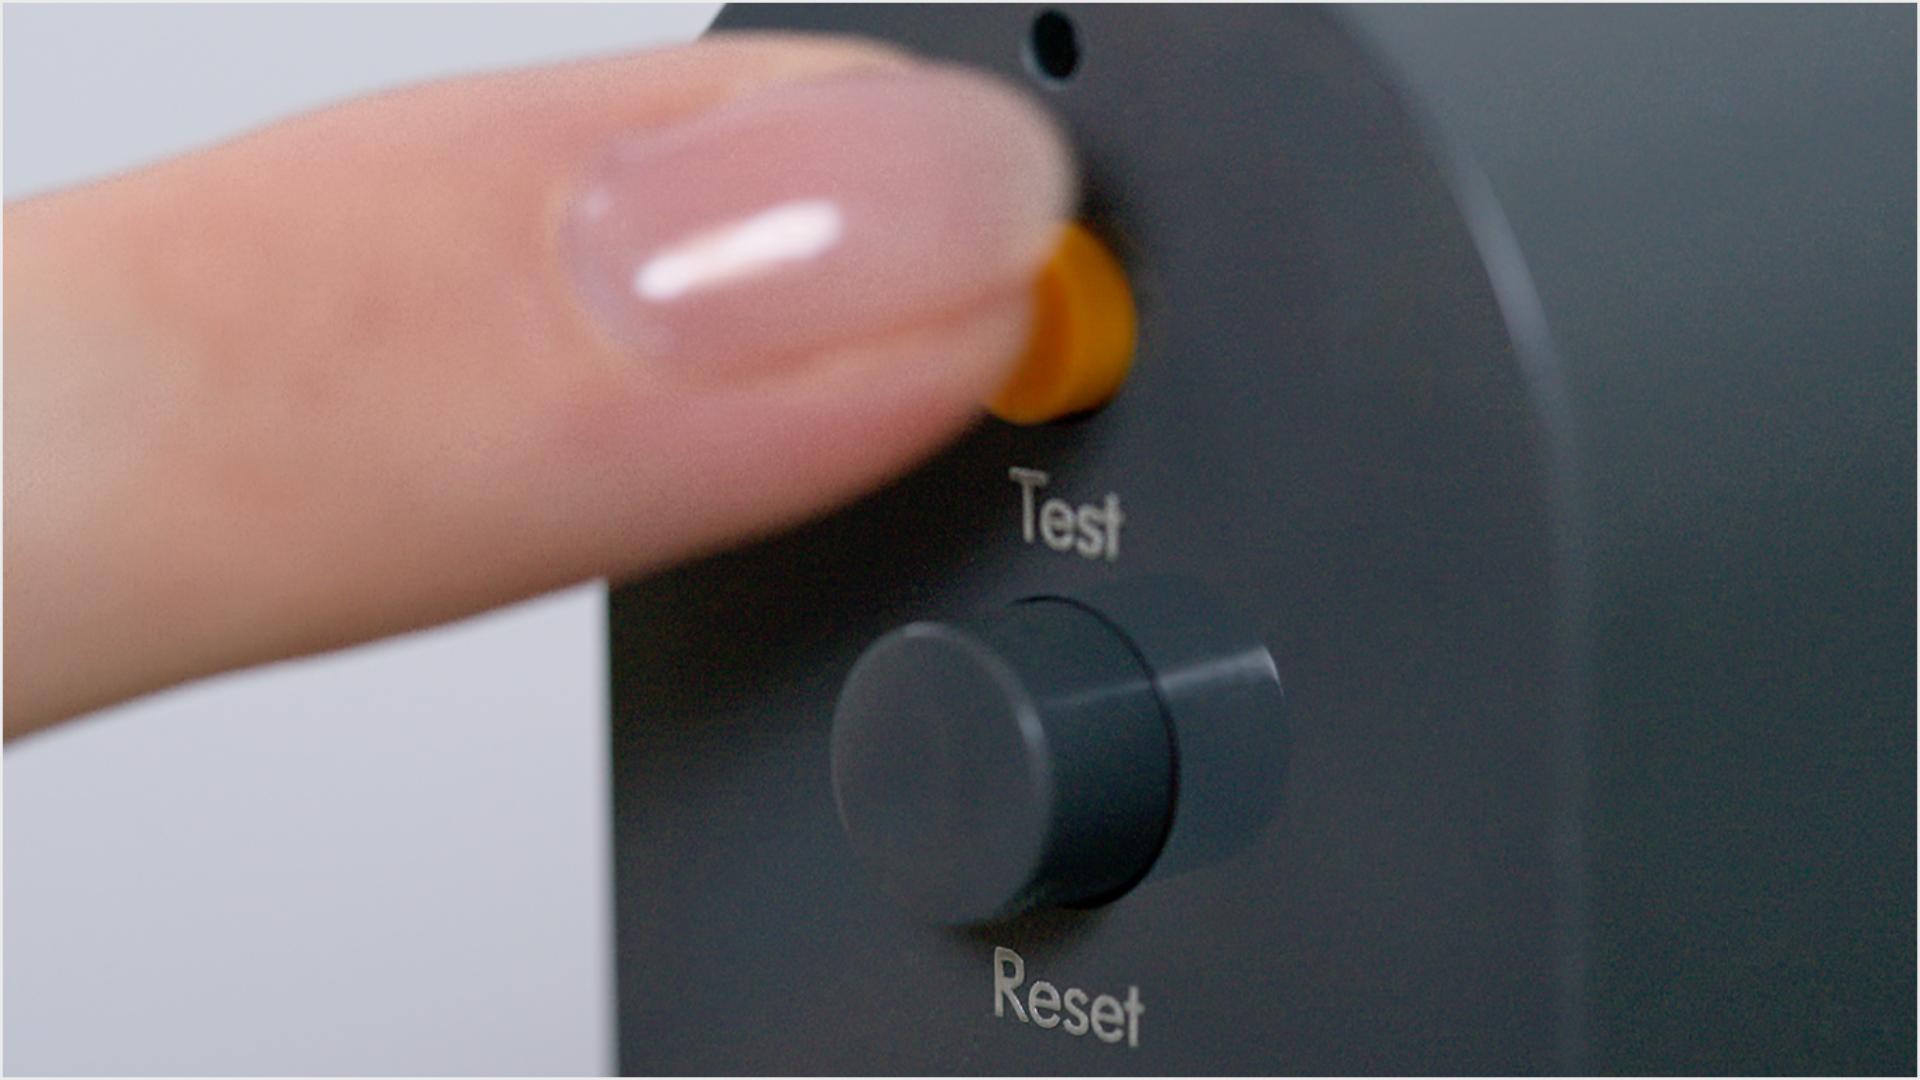 Palec naciskający przycisk testowy na wtyczce PRCD